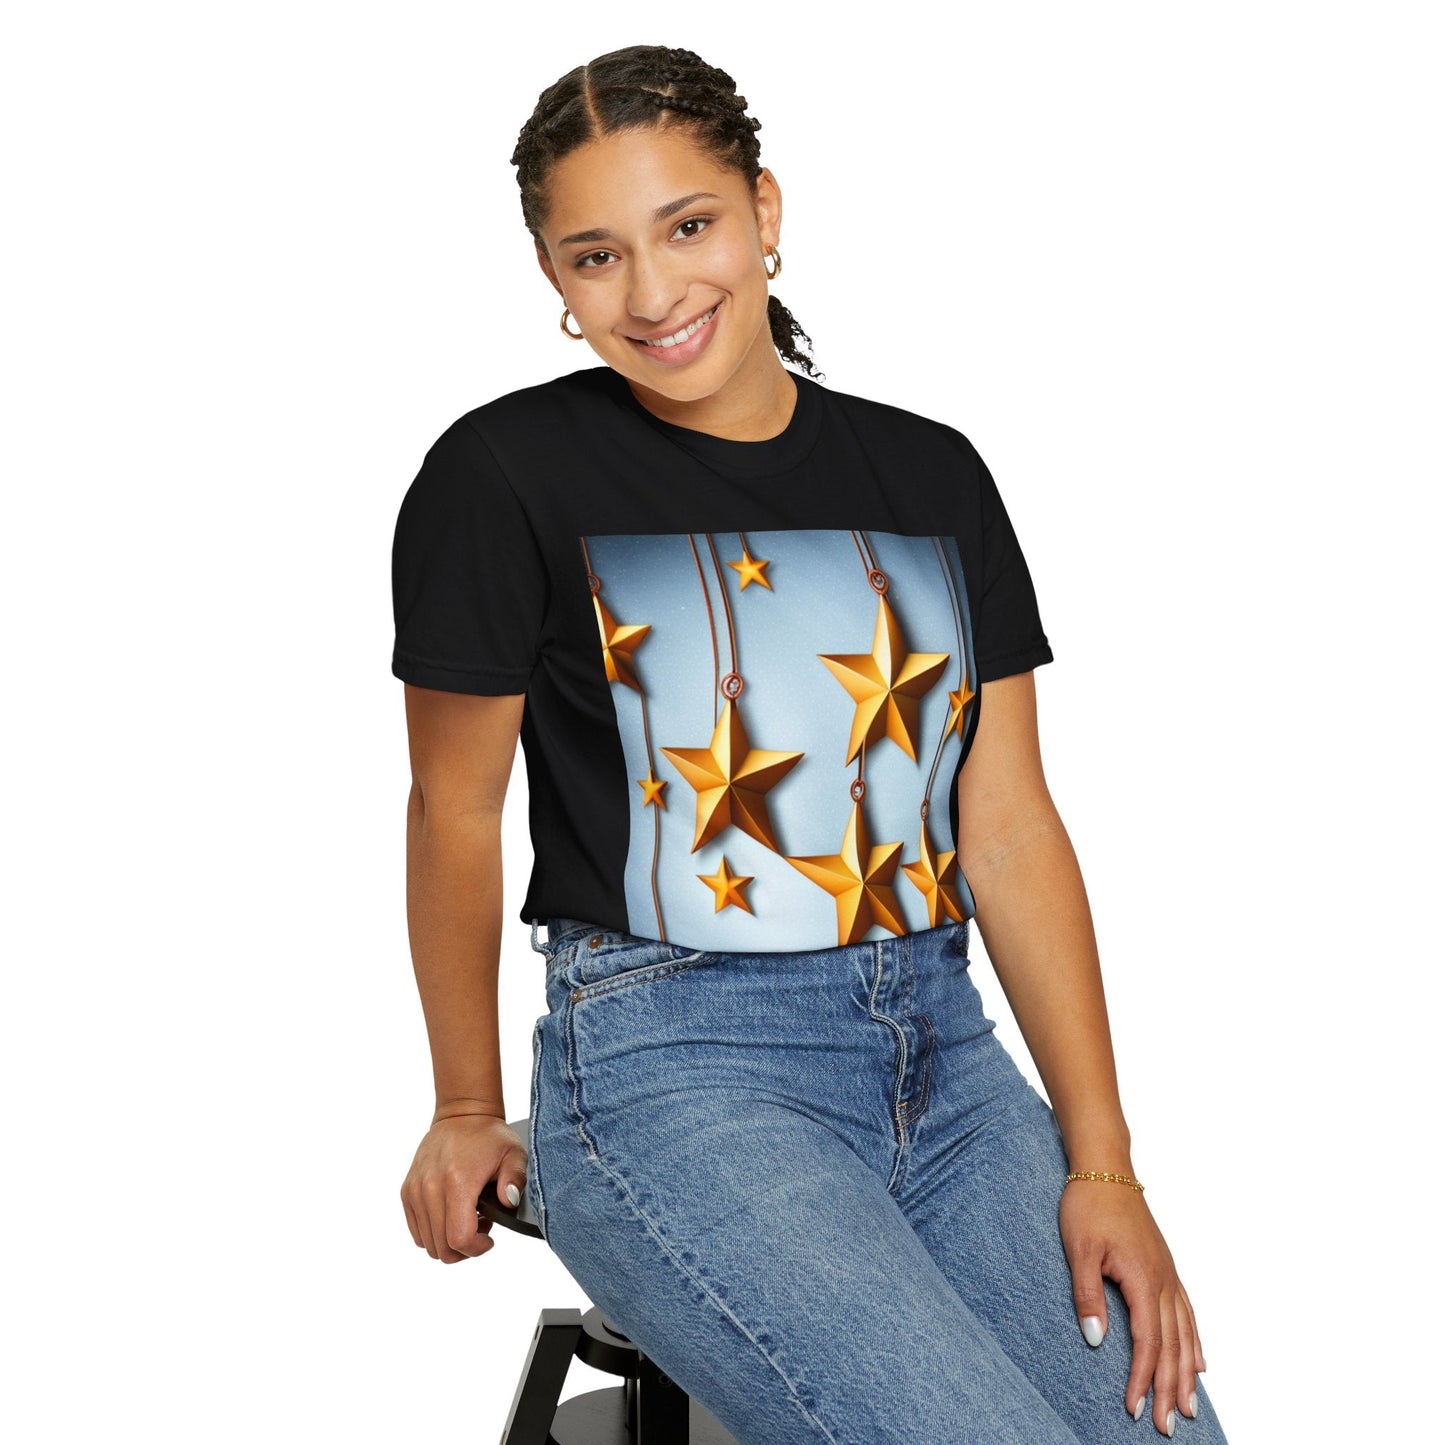 Best Seller Beautiful Golden Stars Unisex Garment-Dyed T-shirt